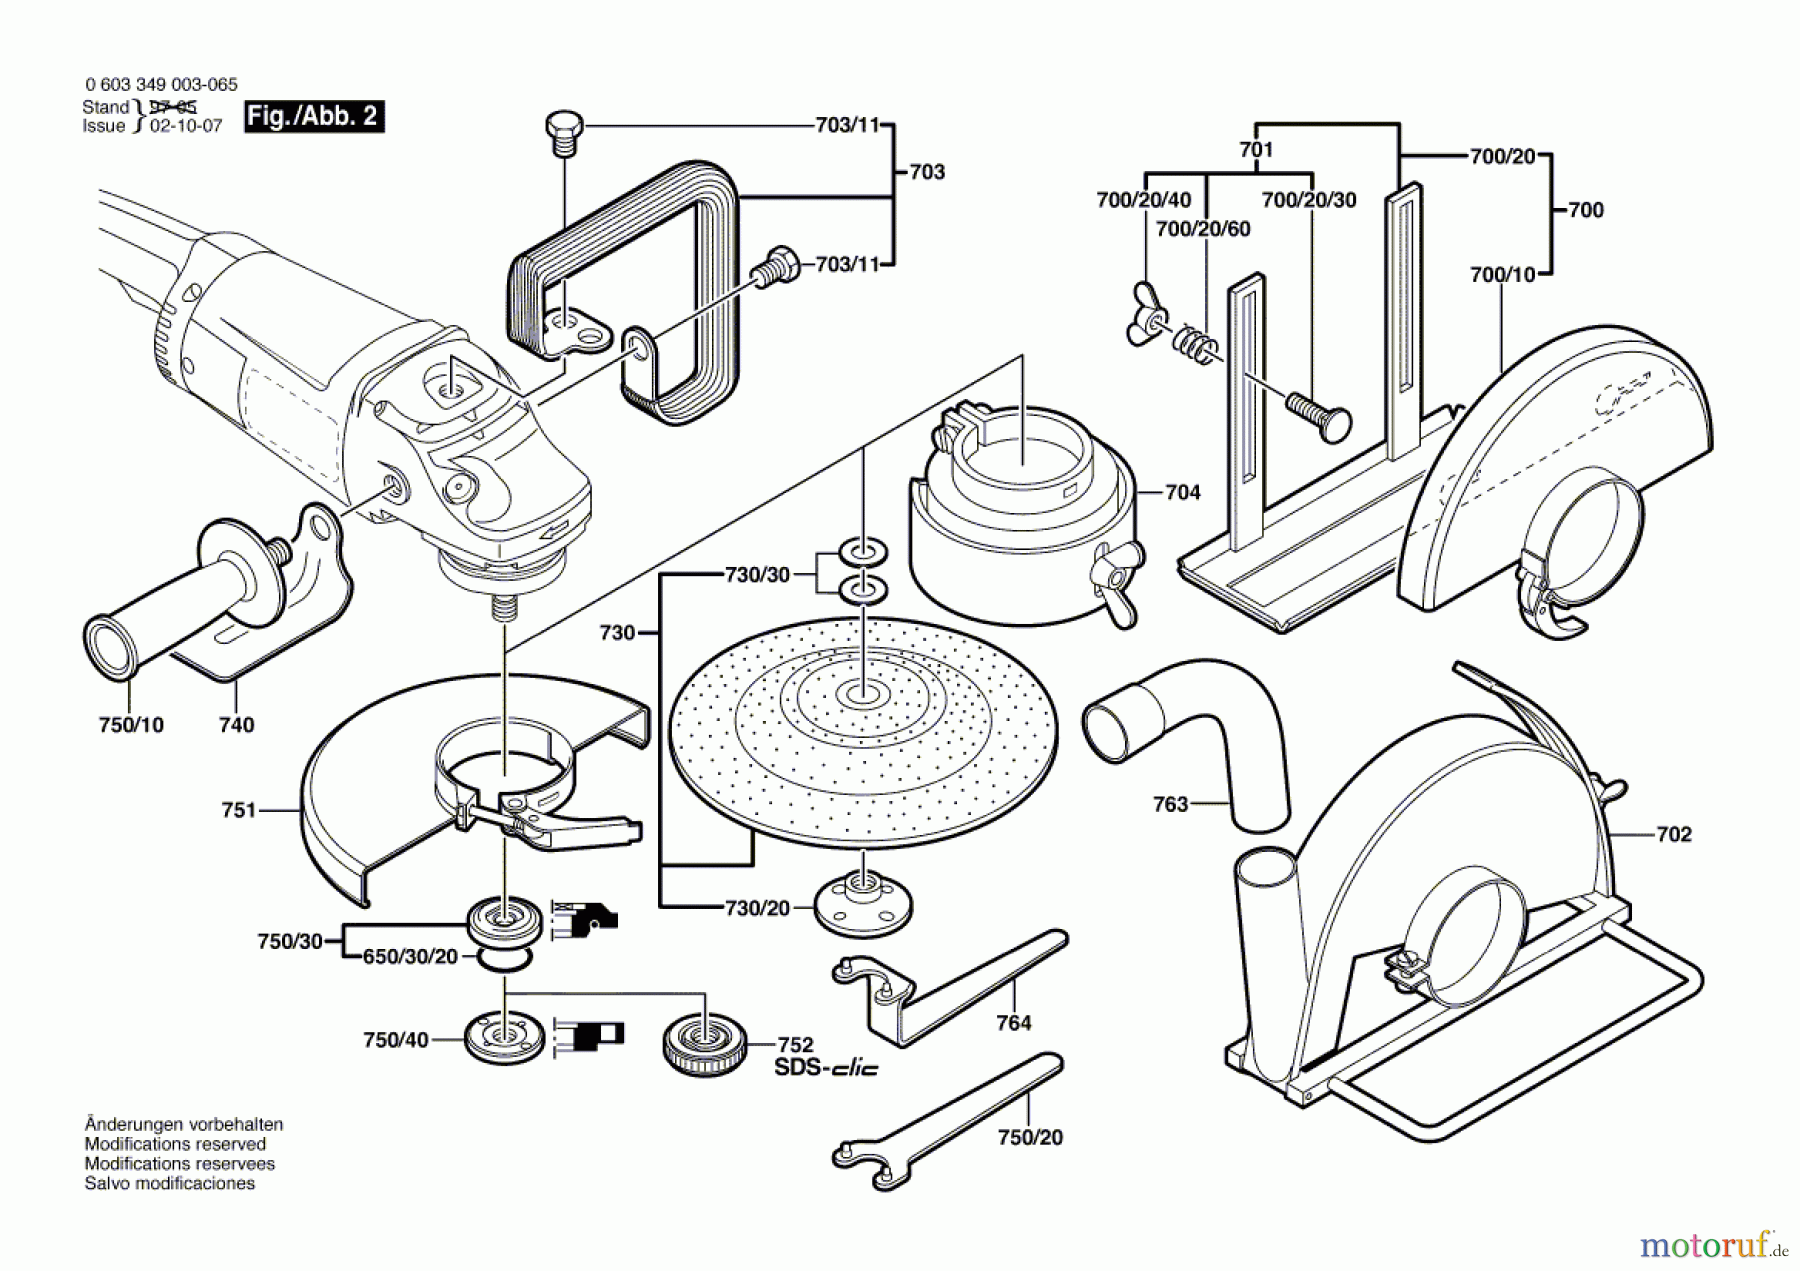  Bosch Werkzeug Winkelschleifer PWS 1800 Seite 2